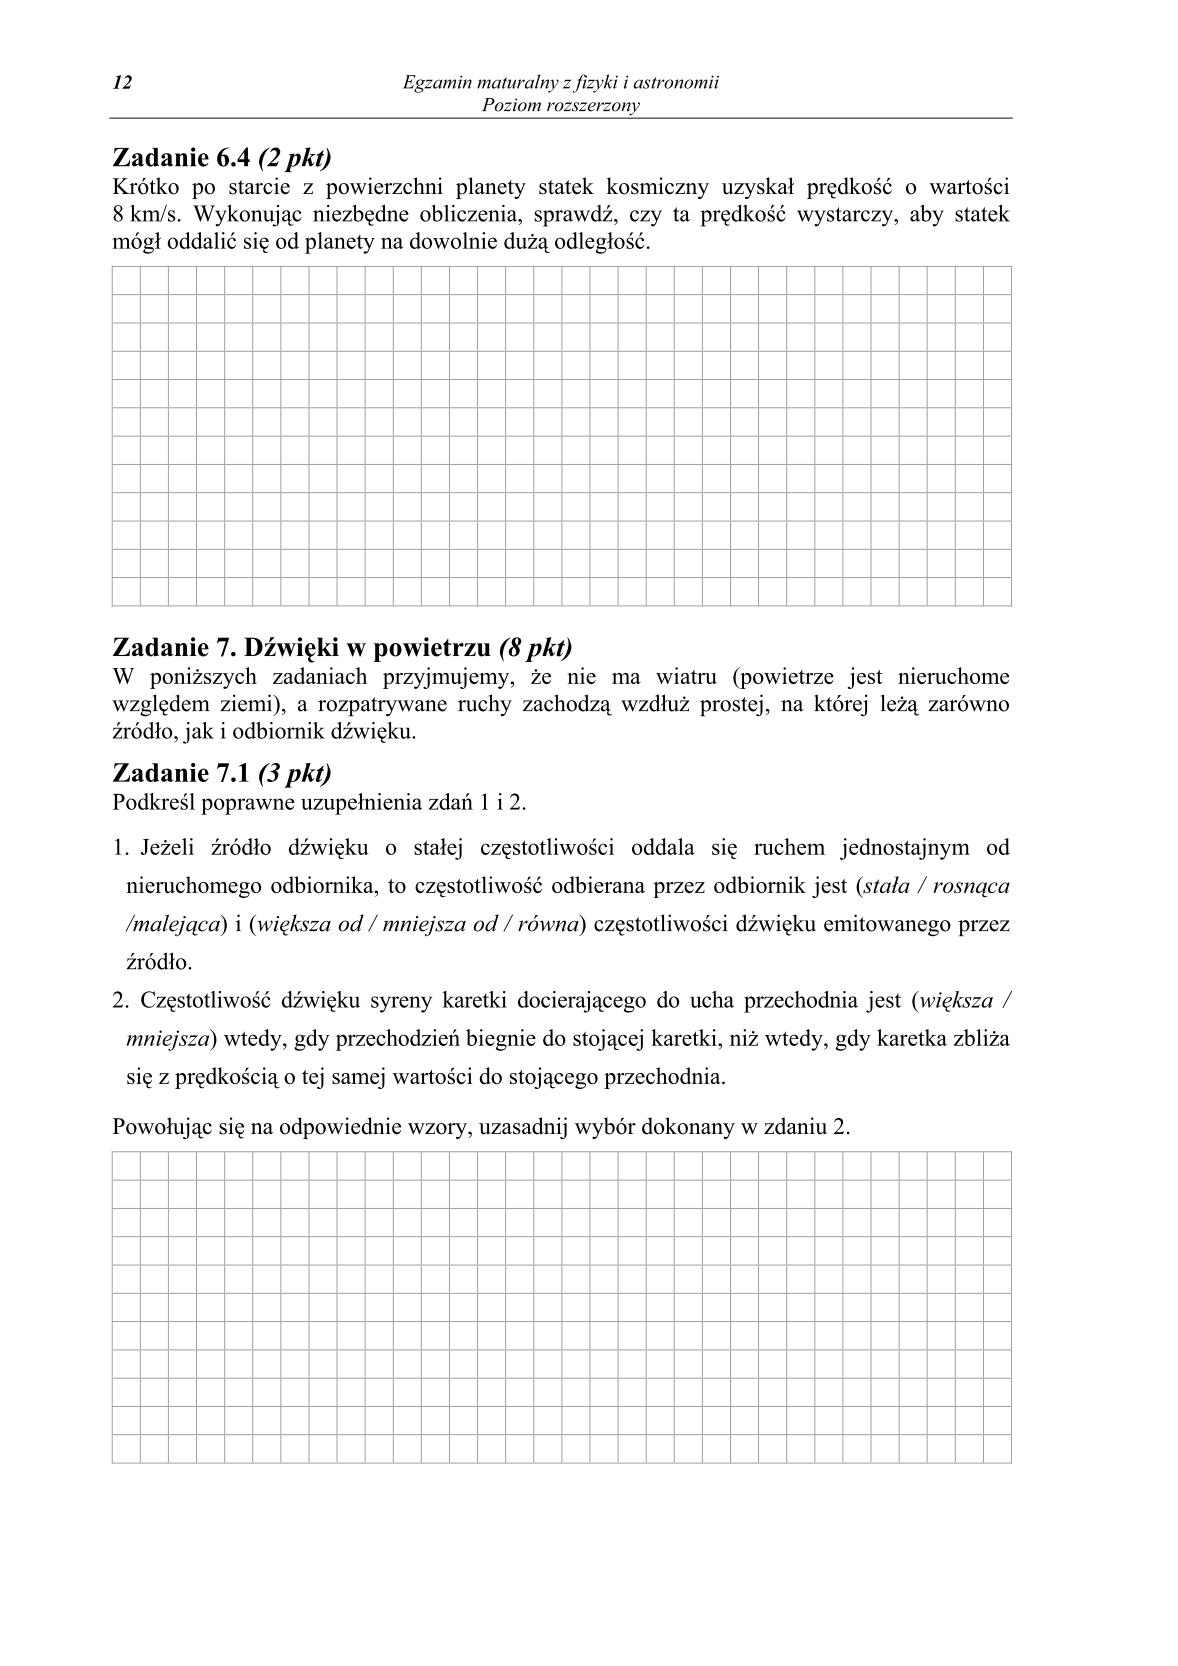 pytania-fizyka-i-astronomia-poziom-rozszerzony-matura-2014-str.12